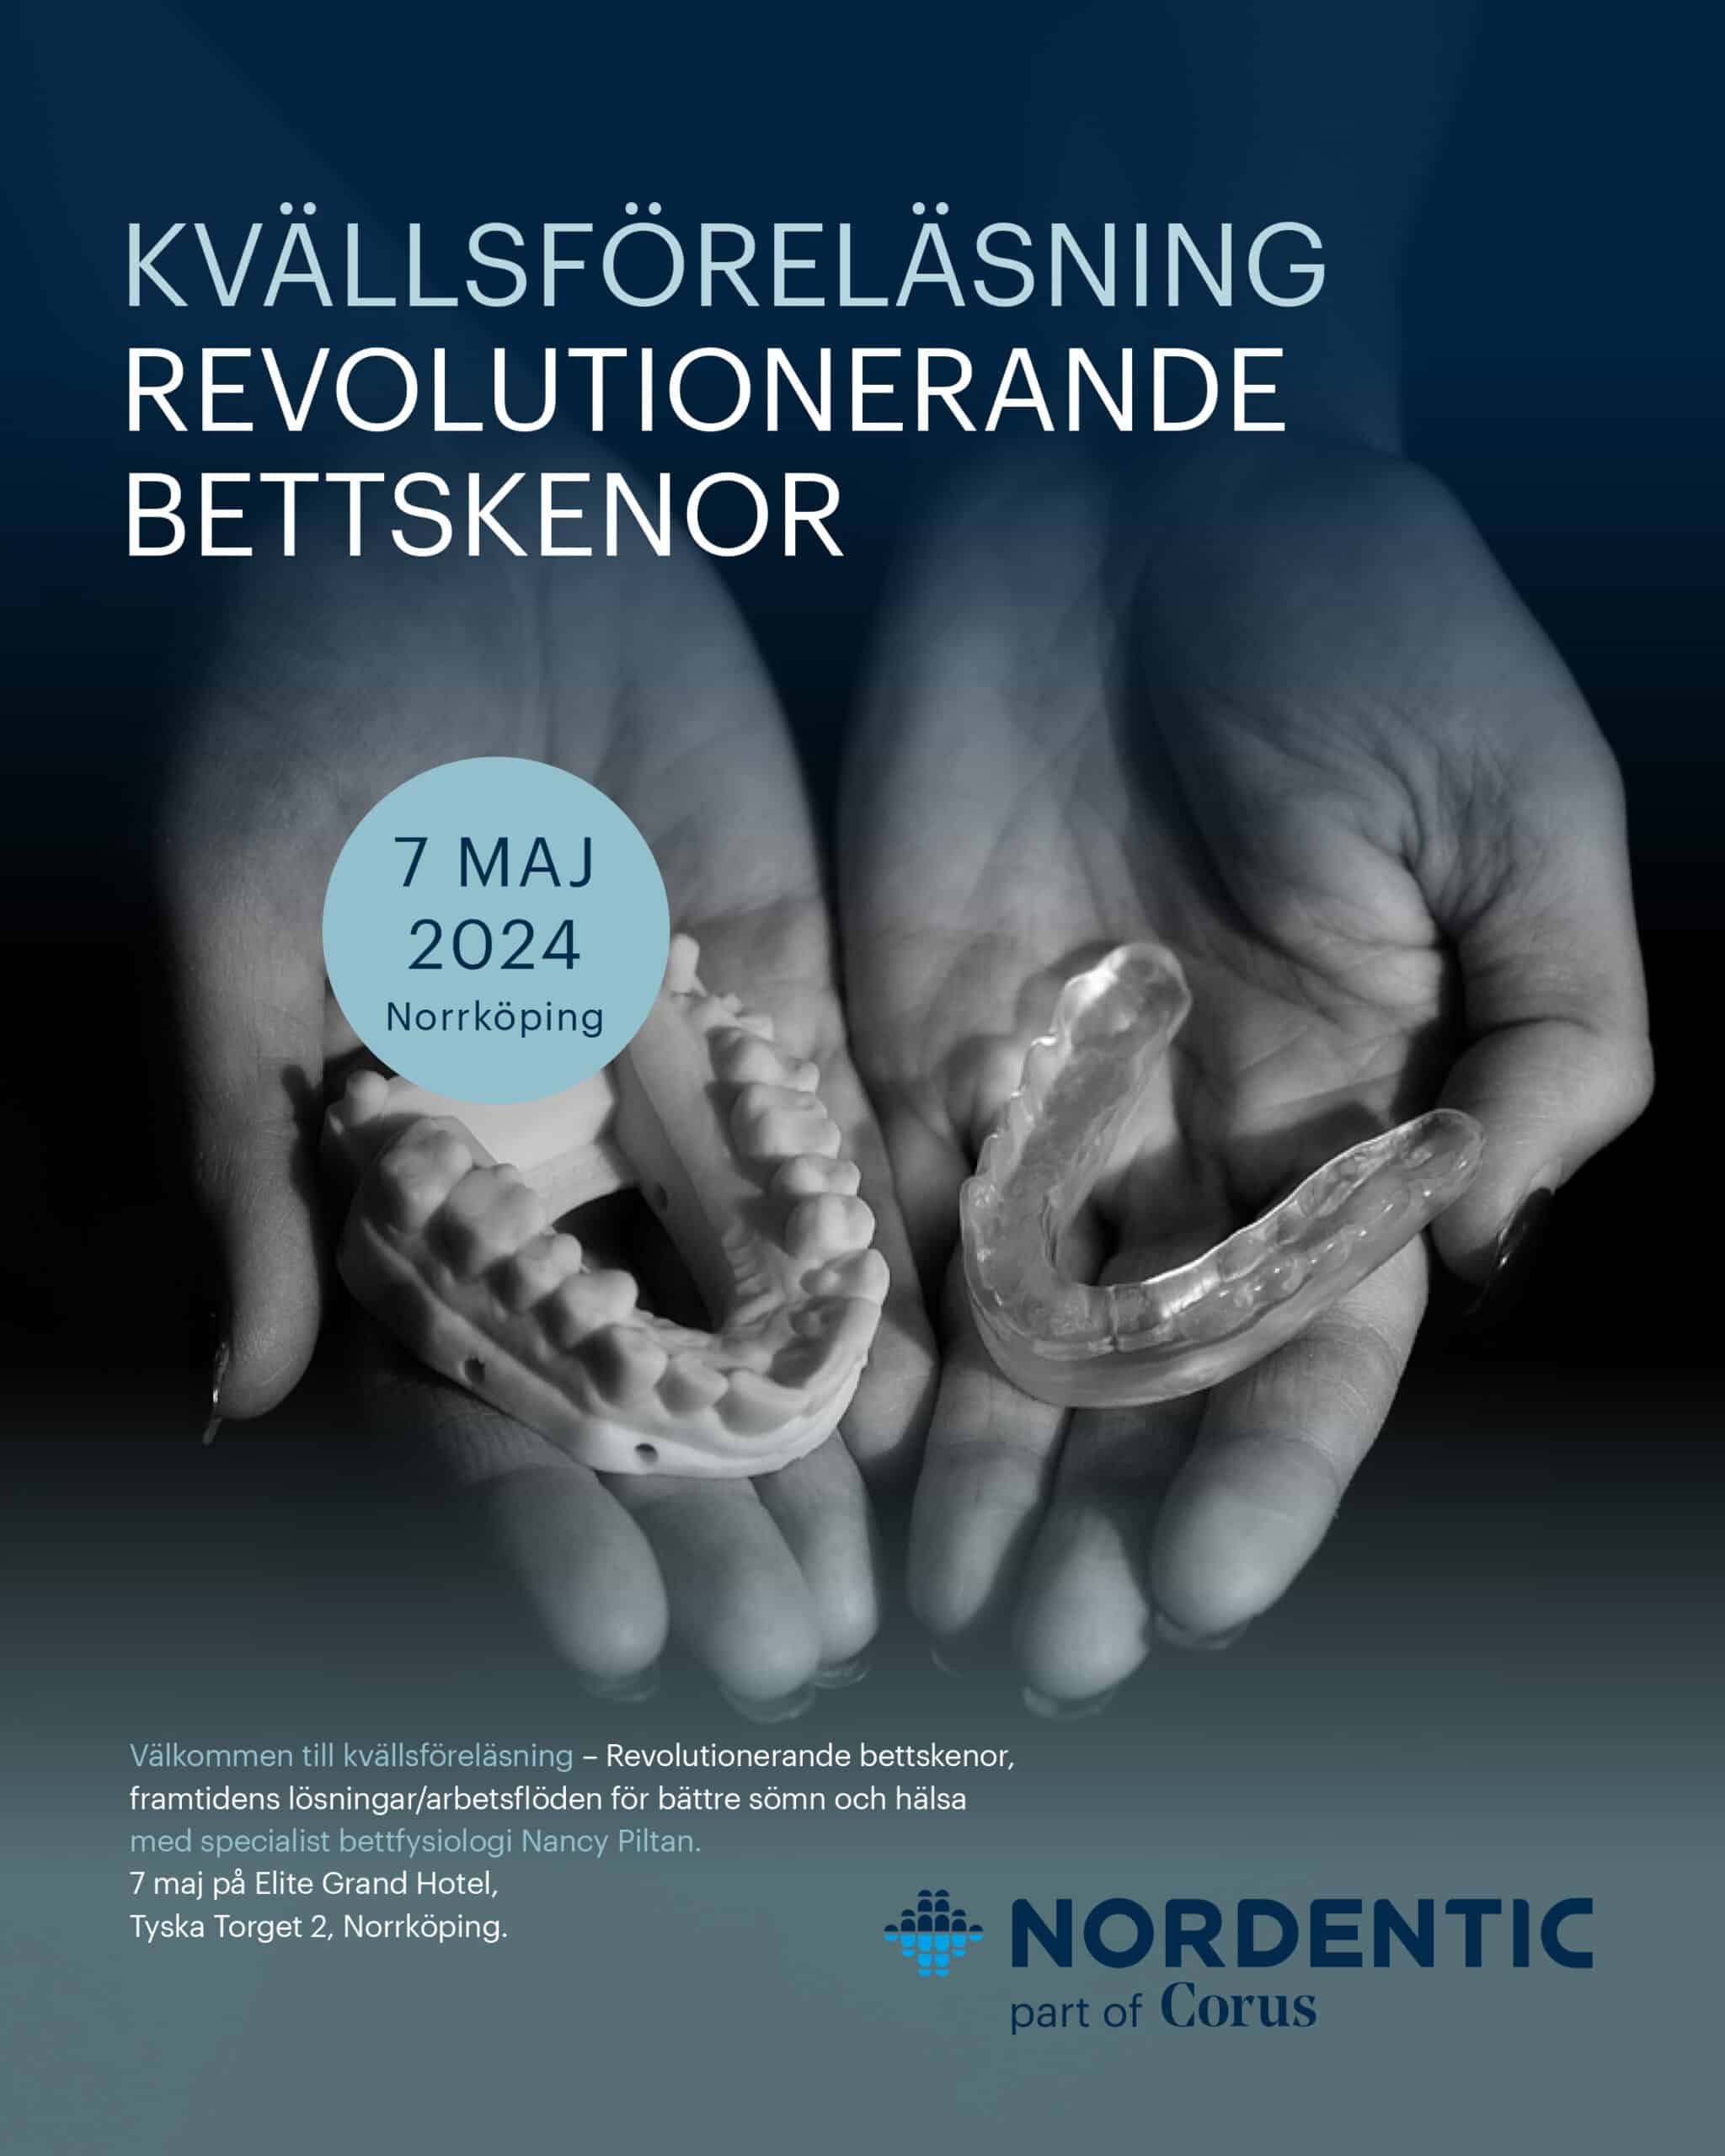 Kvällsföreläsning – 7 maj 2024 i Norrköping